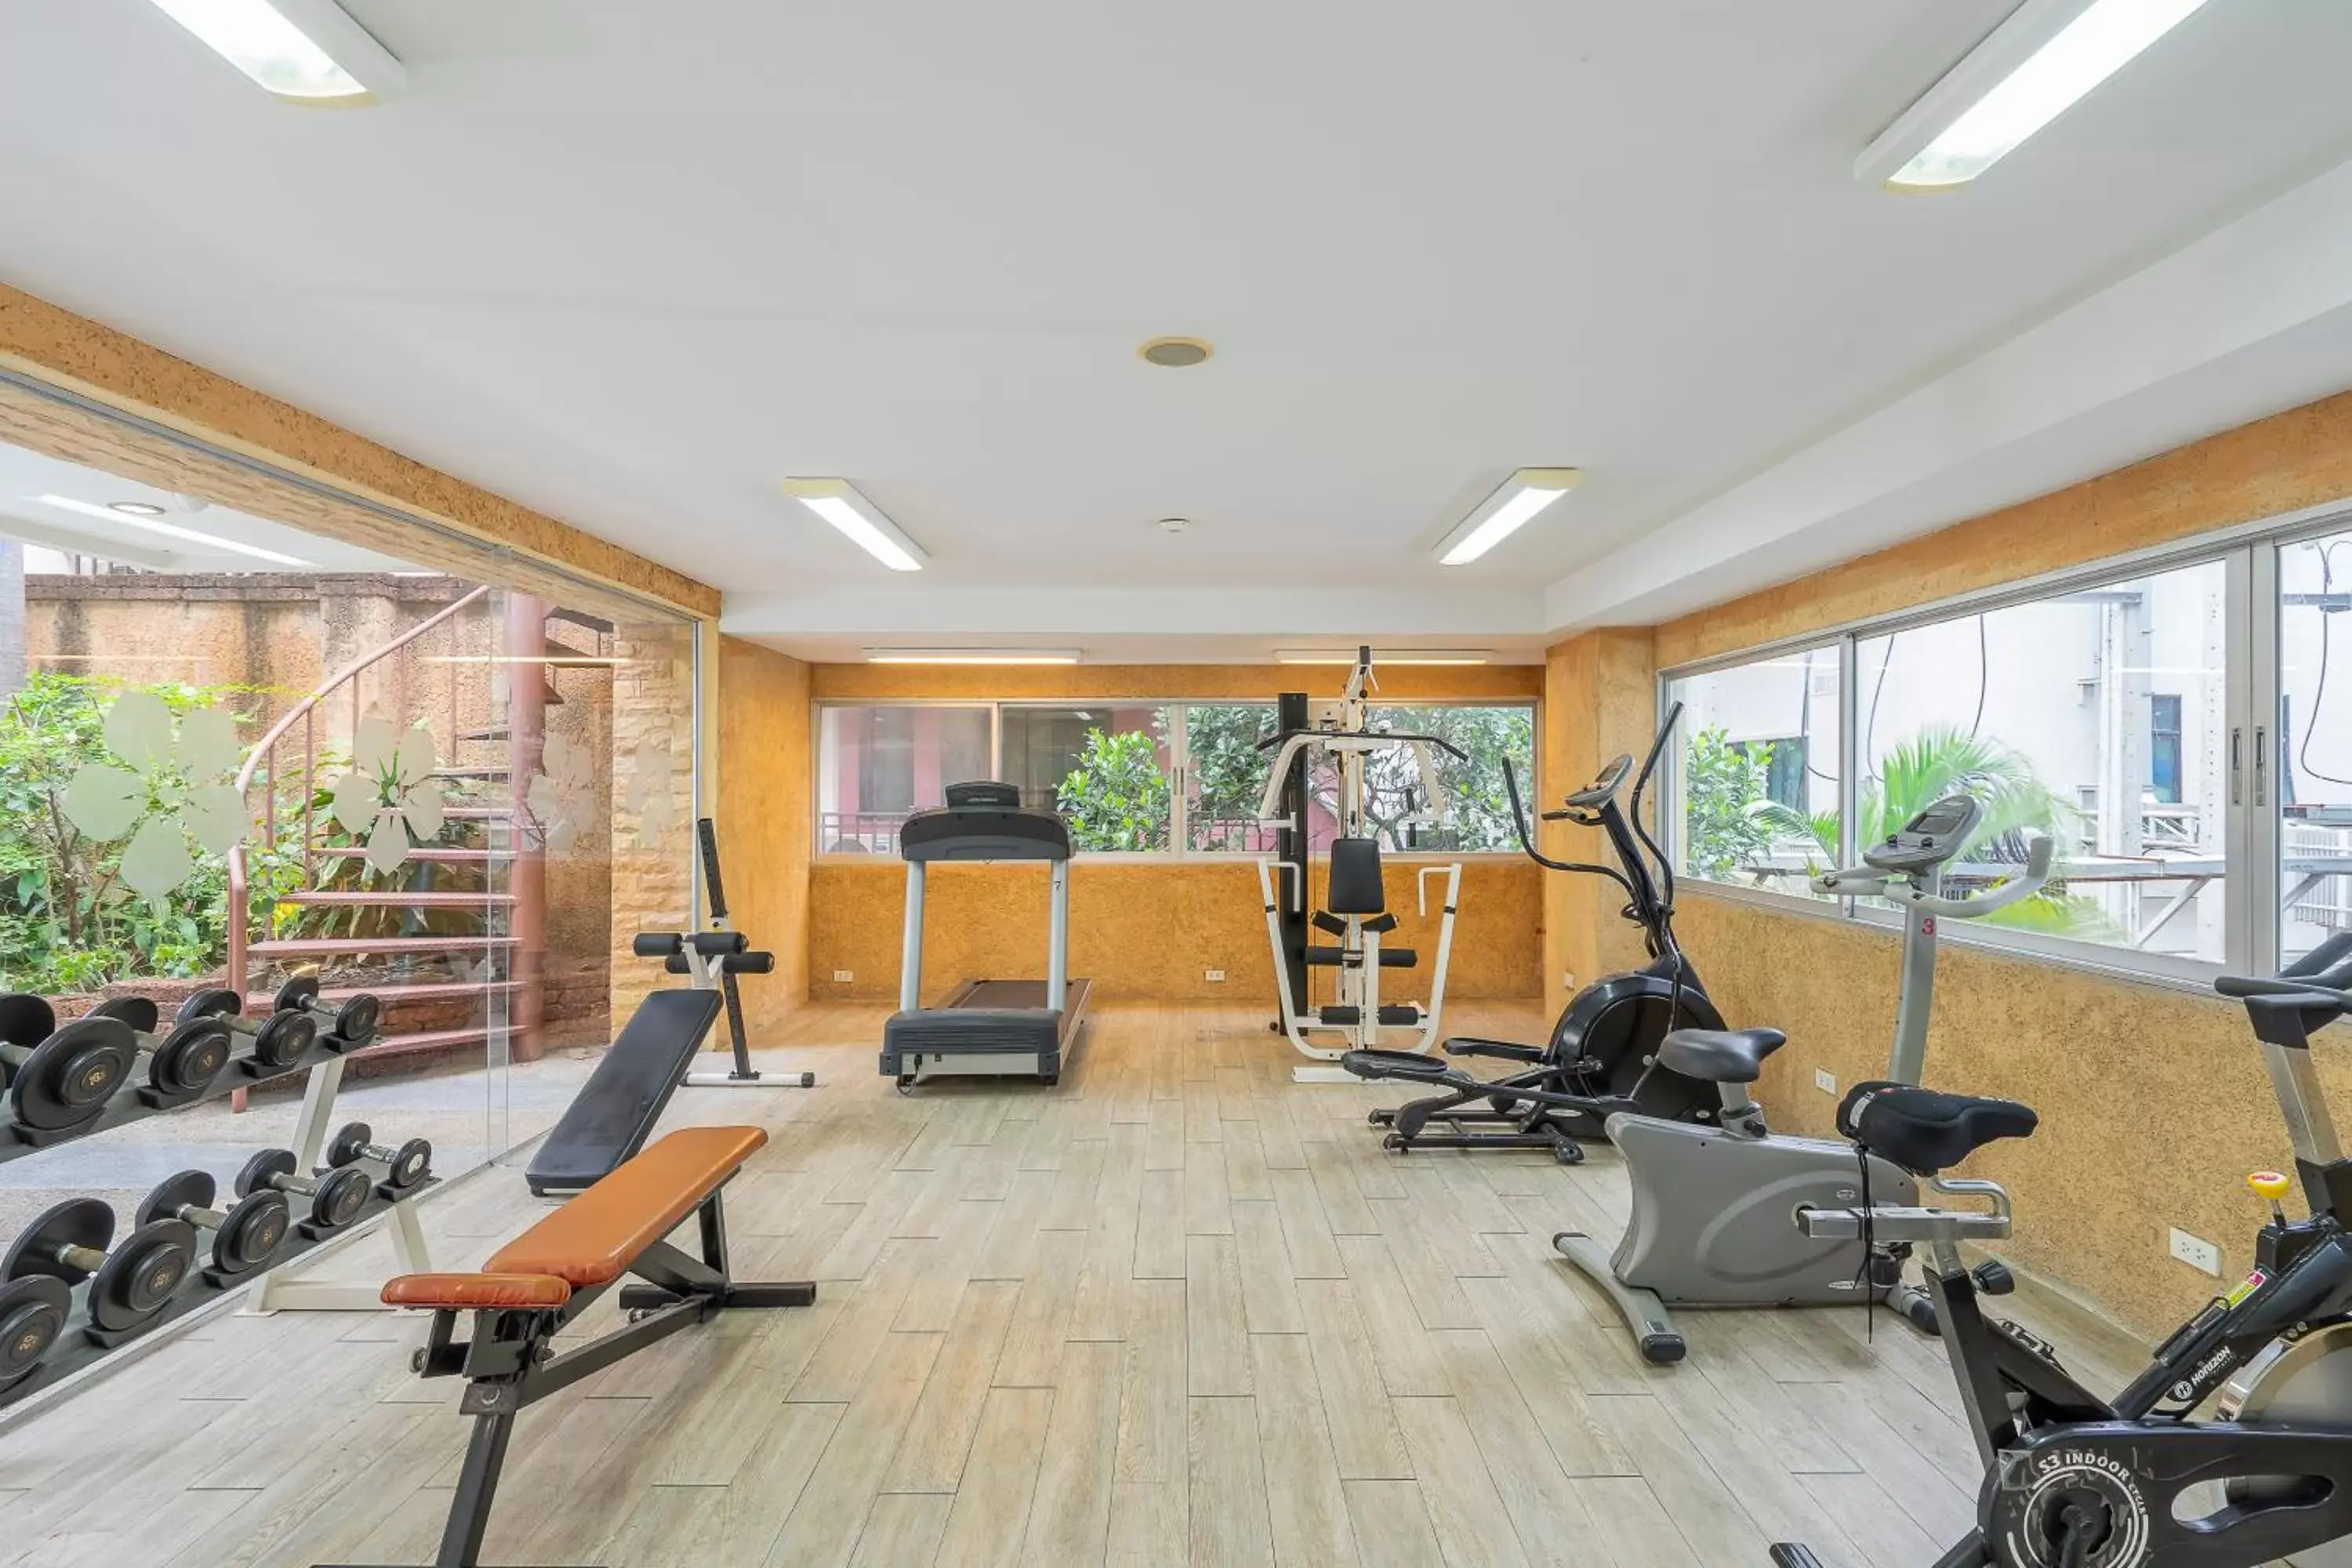 Fitness centre/facilities, Fitness Center/Facilities in Bella Villa Prima